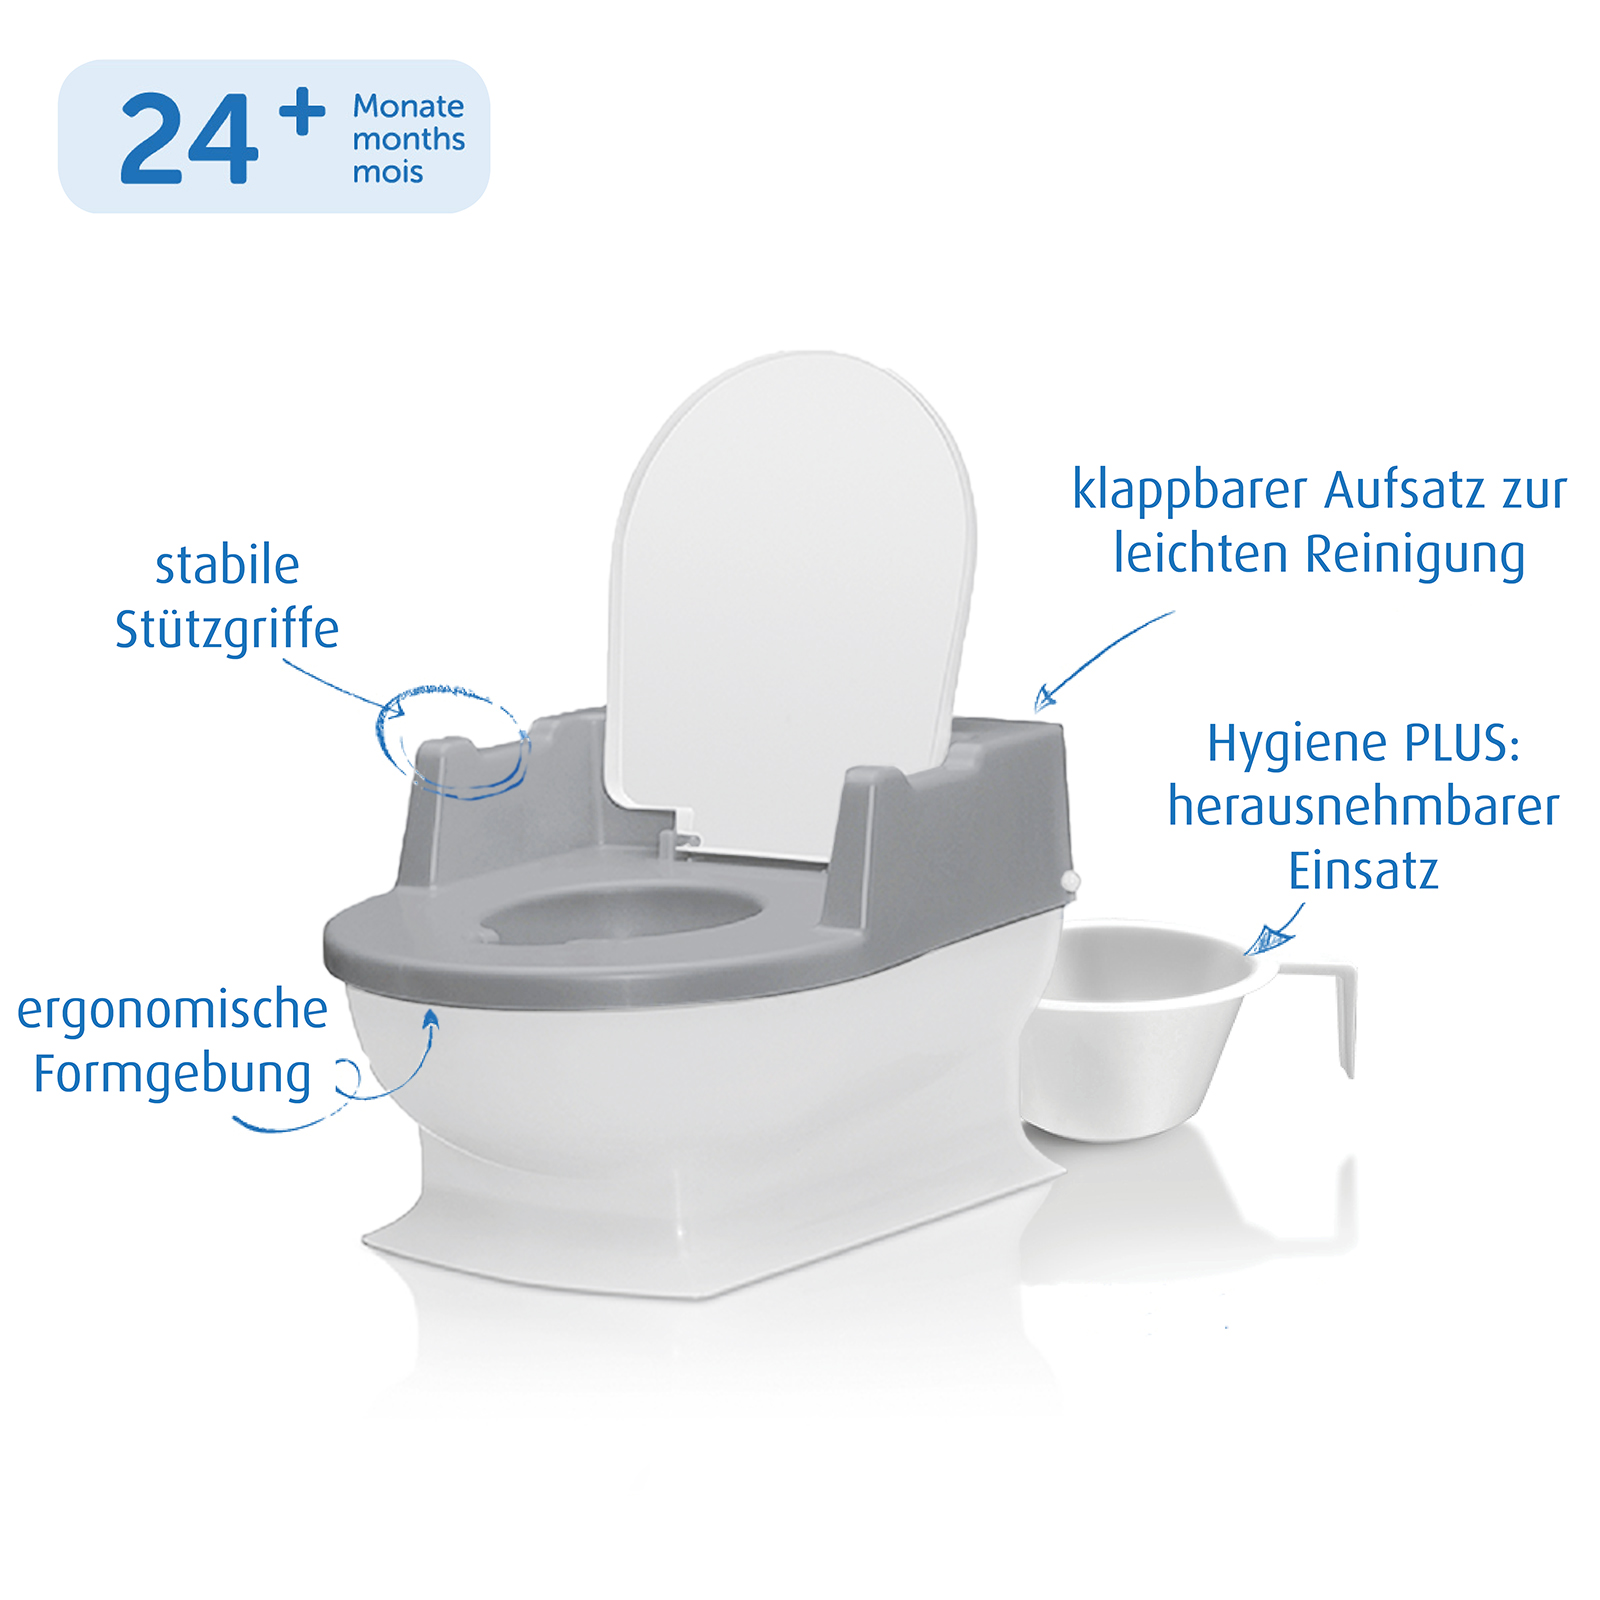 Sitzfritz - Die Mini-Toilette zum Großwerden, weiß-grau